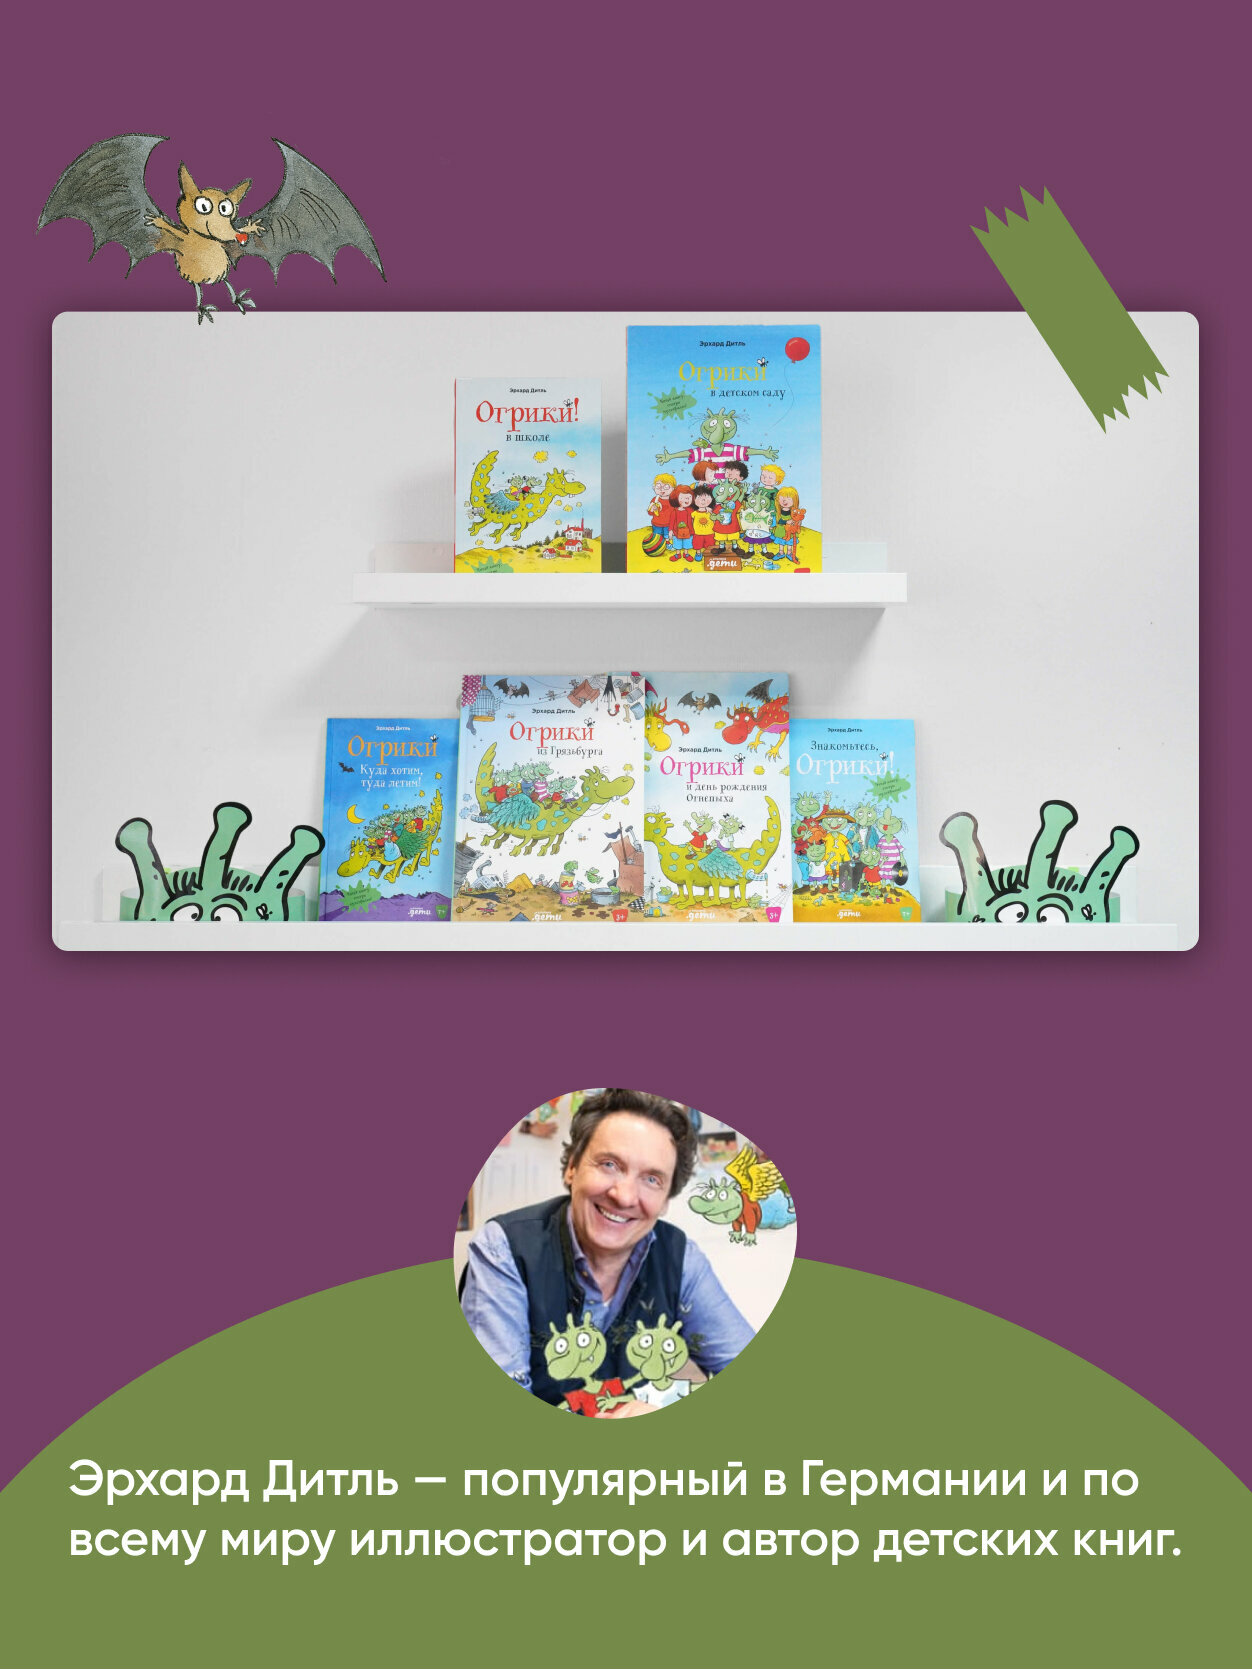 Огрики в детском саду / Детские книги / Книги для детей / Книги про детский сад